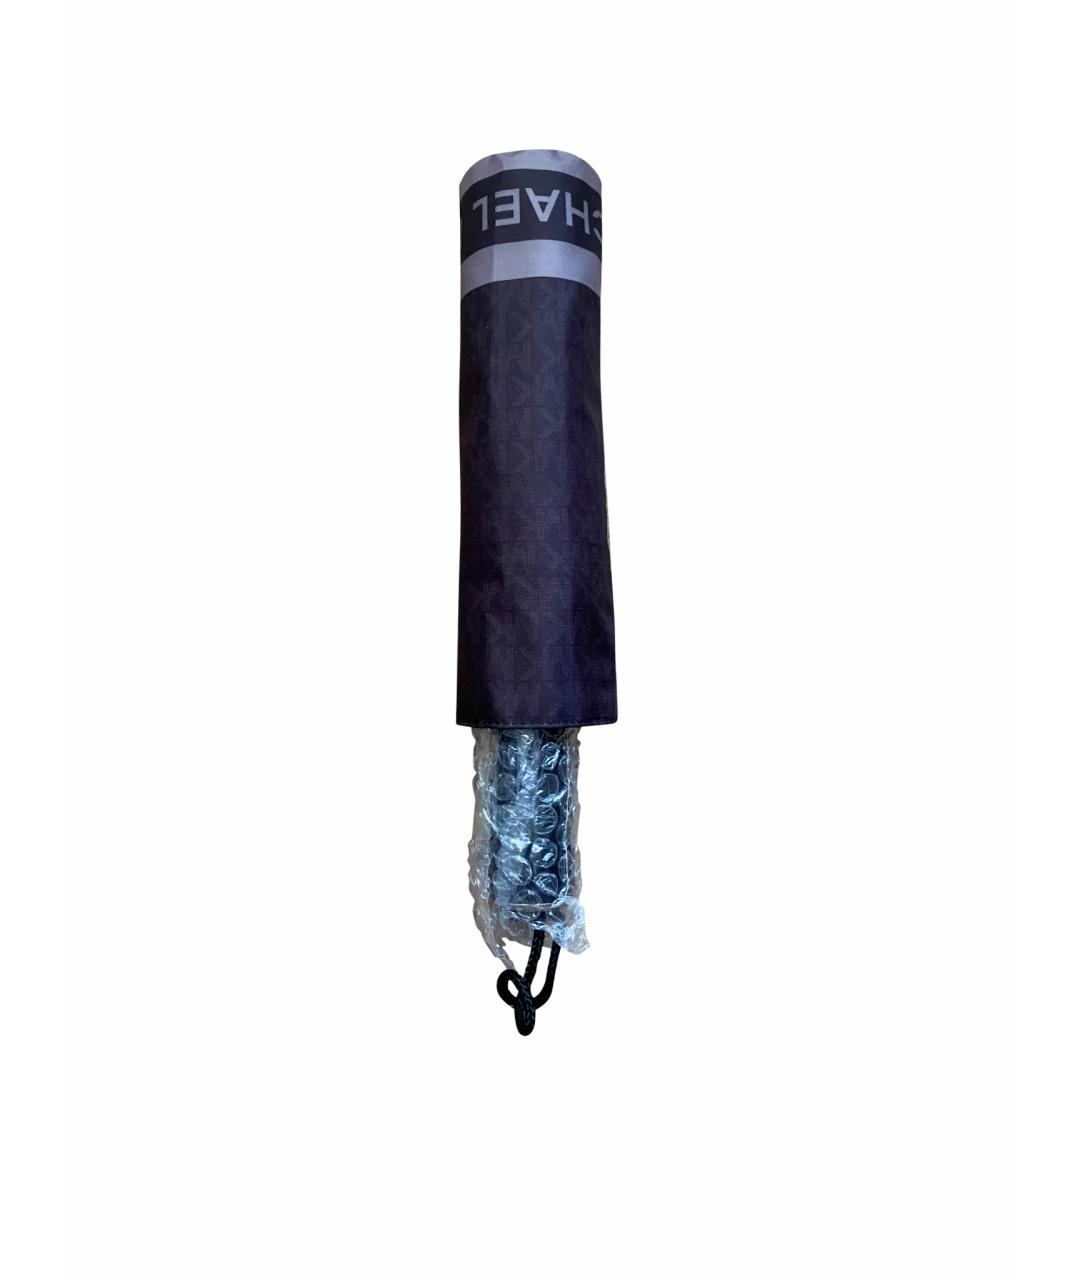 MICHAEL KORS Коричневый зонт, фото 1